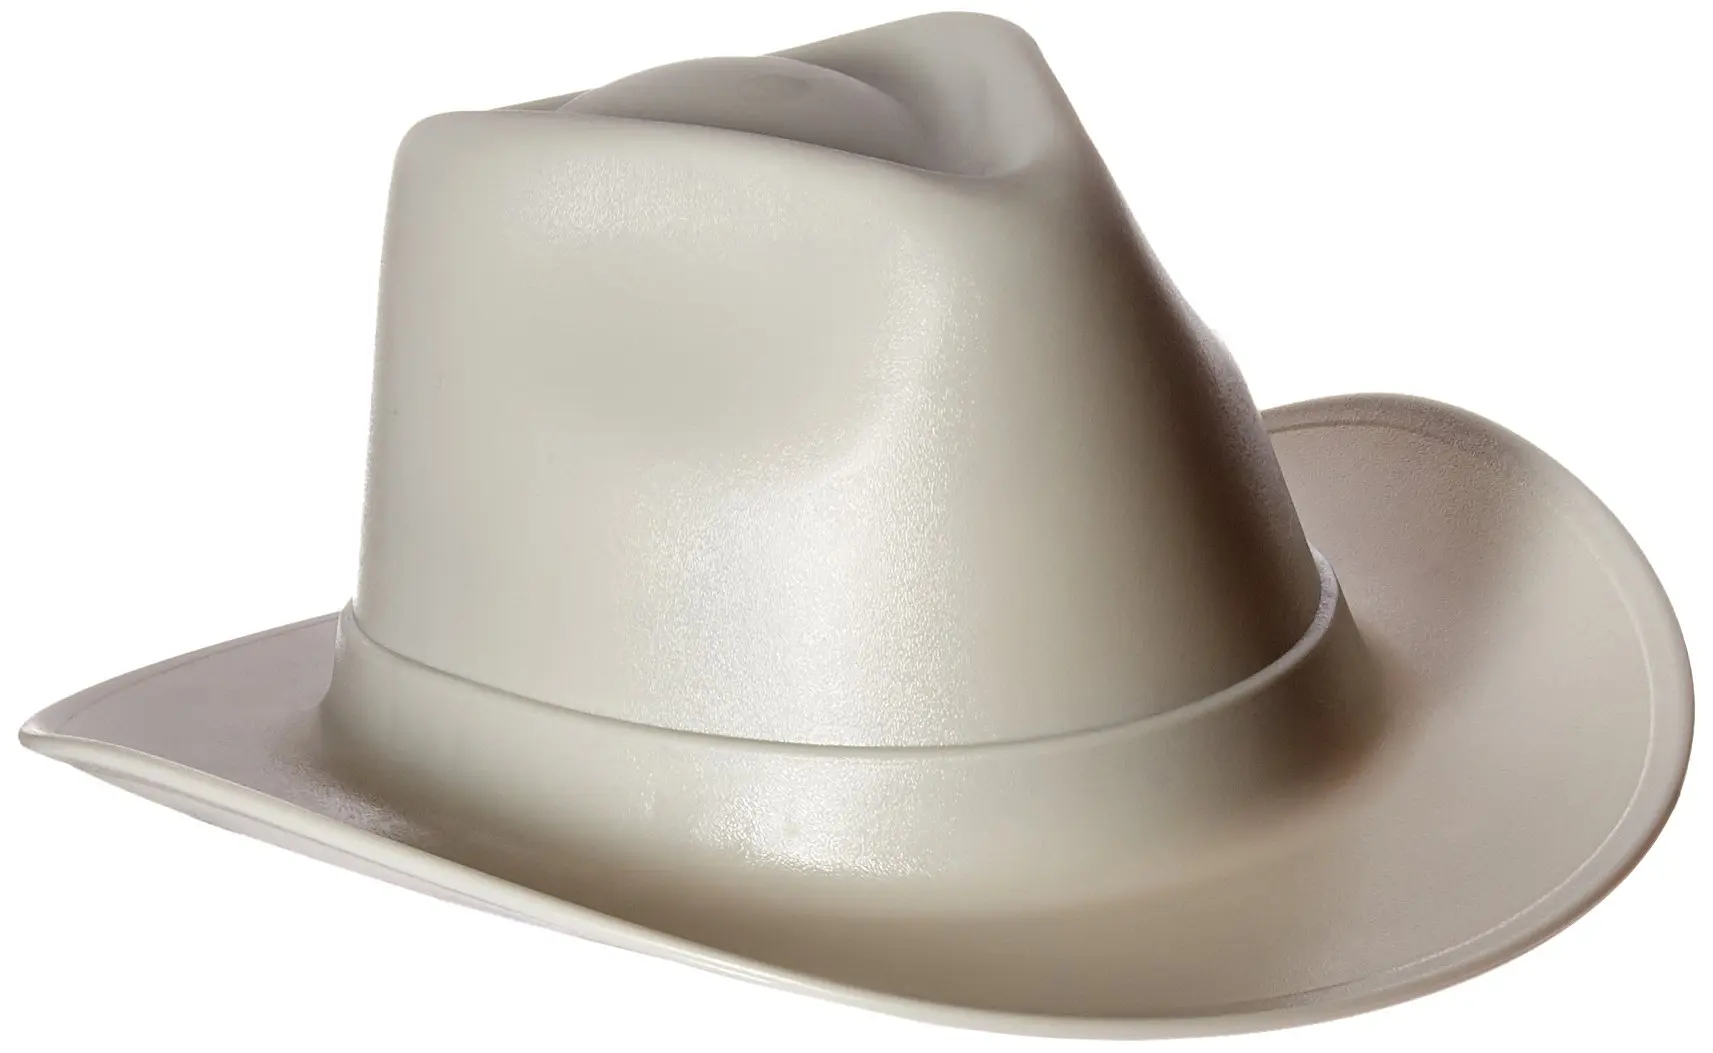 Каска ковбой. Каска защитная ковбойская шляпа. Vulka vcb100-00 hard hat строительная. Ковбойская каска строительная. Каска ковбойская шляпа строительная.